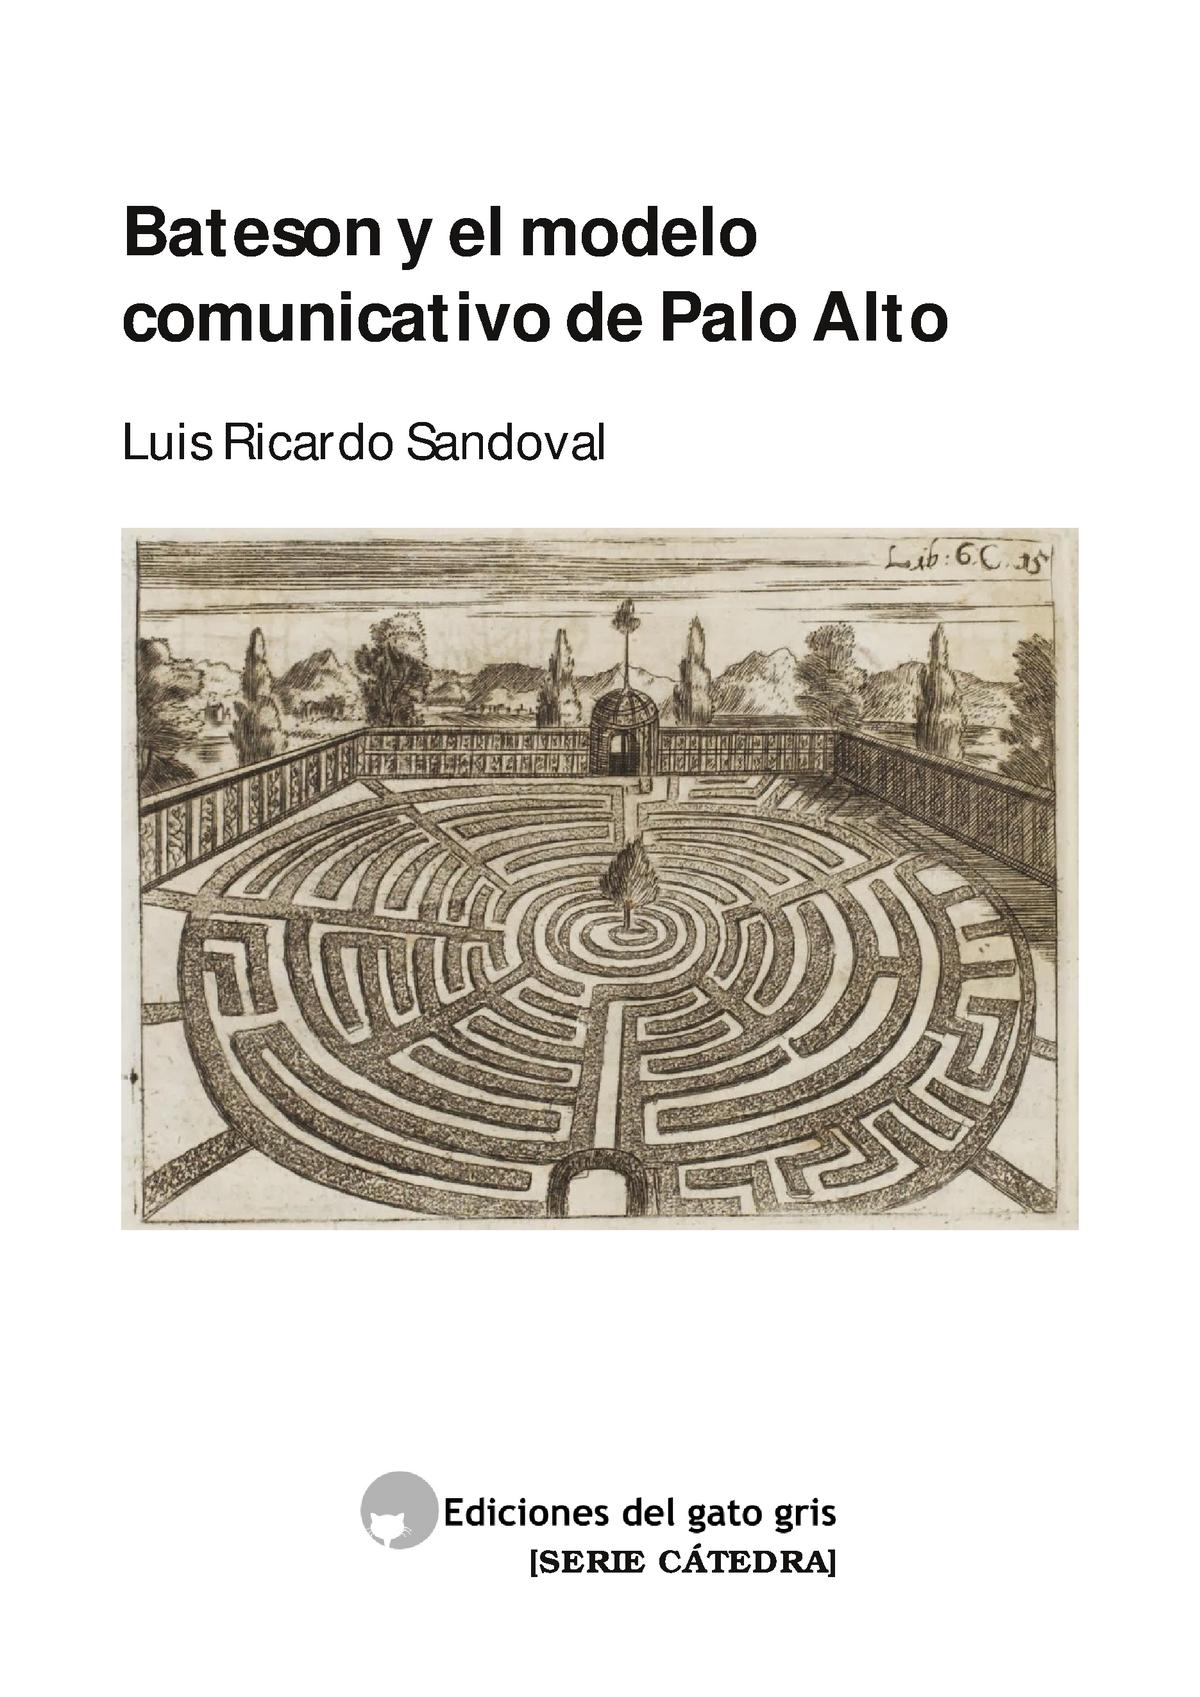 Sandoval Bateson y el modelo comunicativo de Palo Alto - Bateson y el modelo  comunicativo de Palo - Studocu